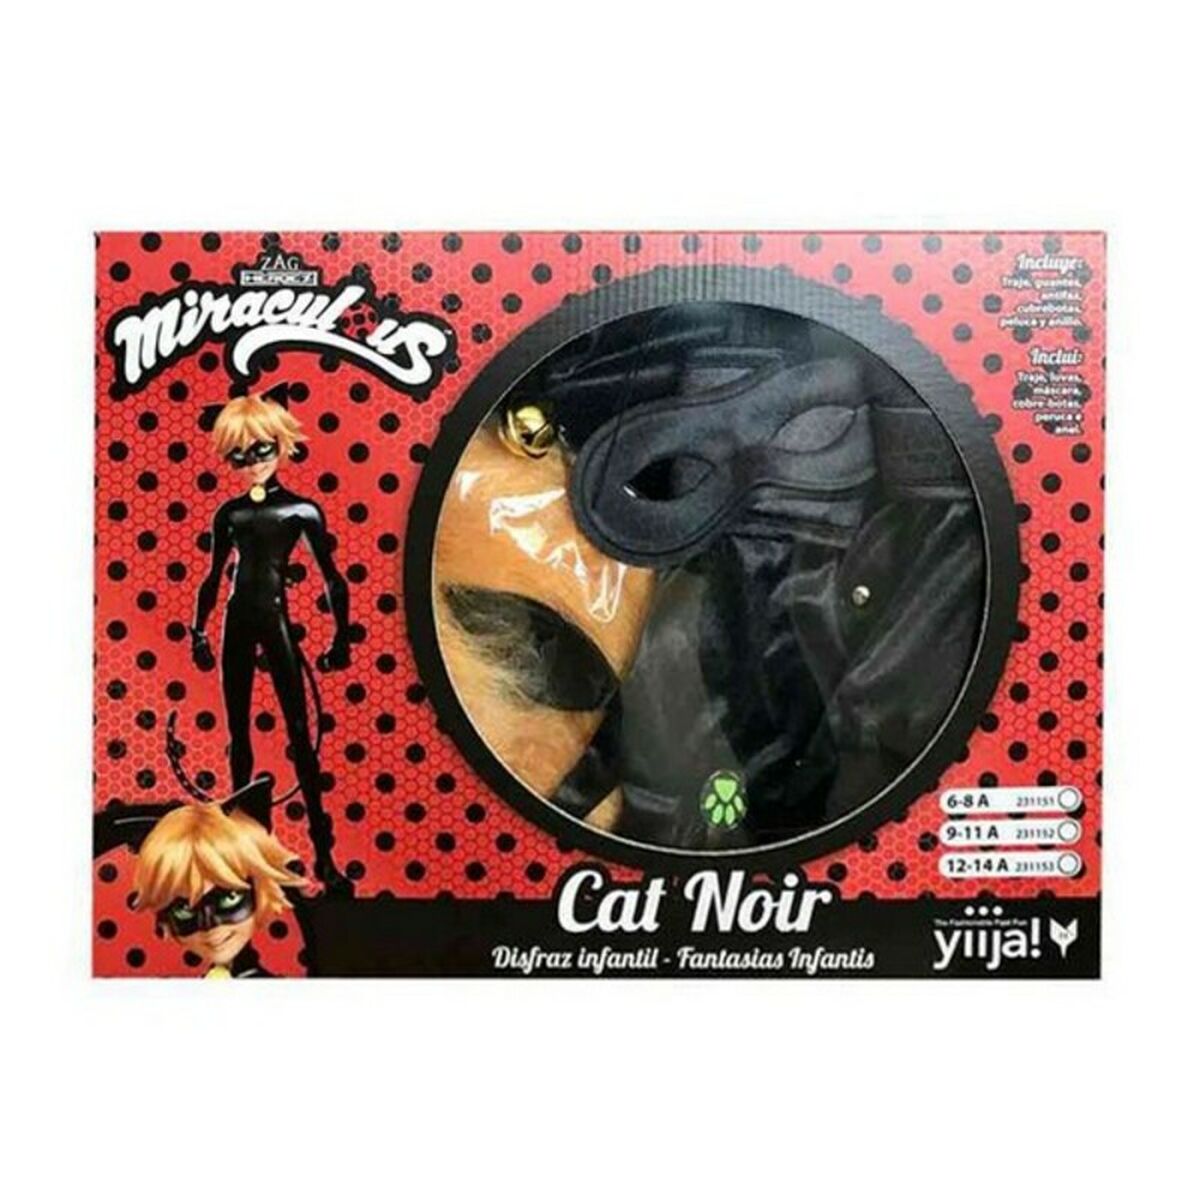 Verkleidung für Kinder Cat Noir My Other Me